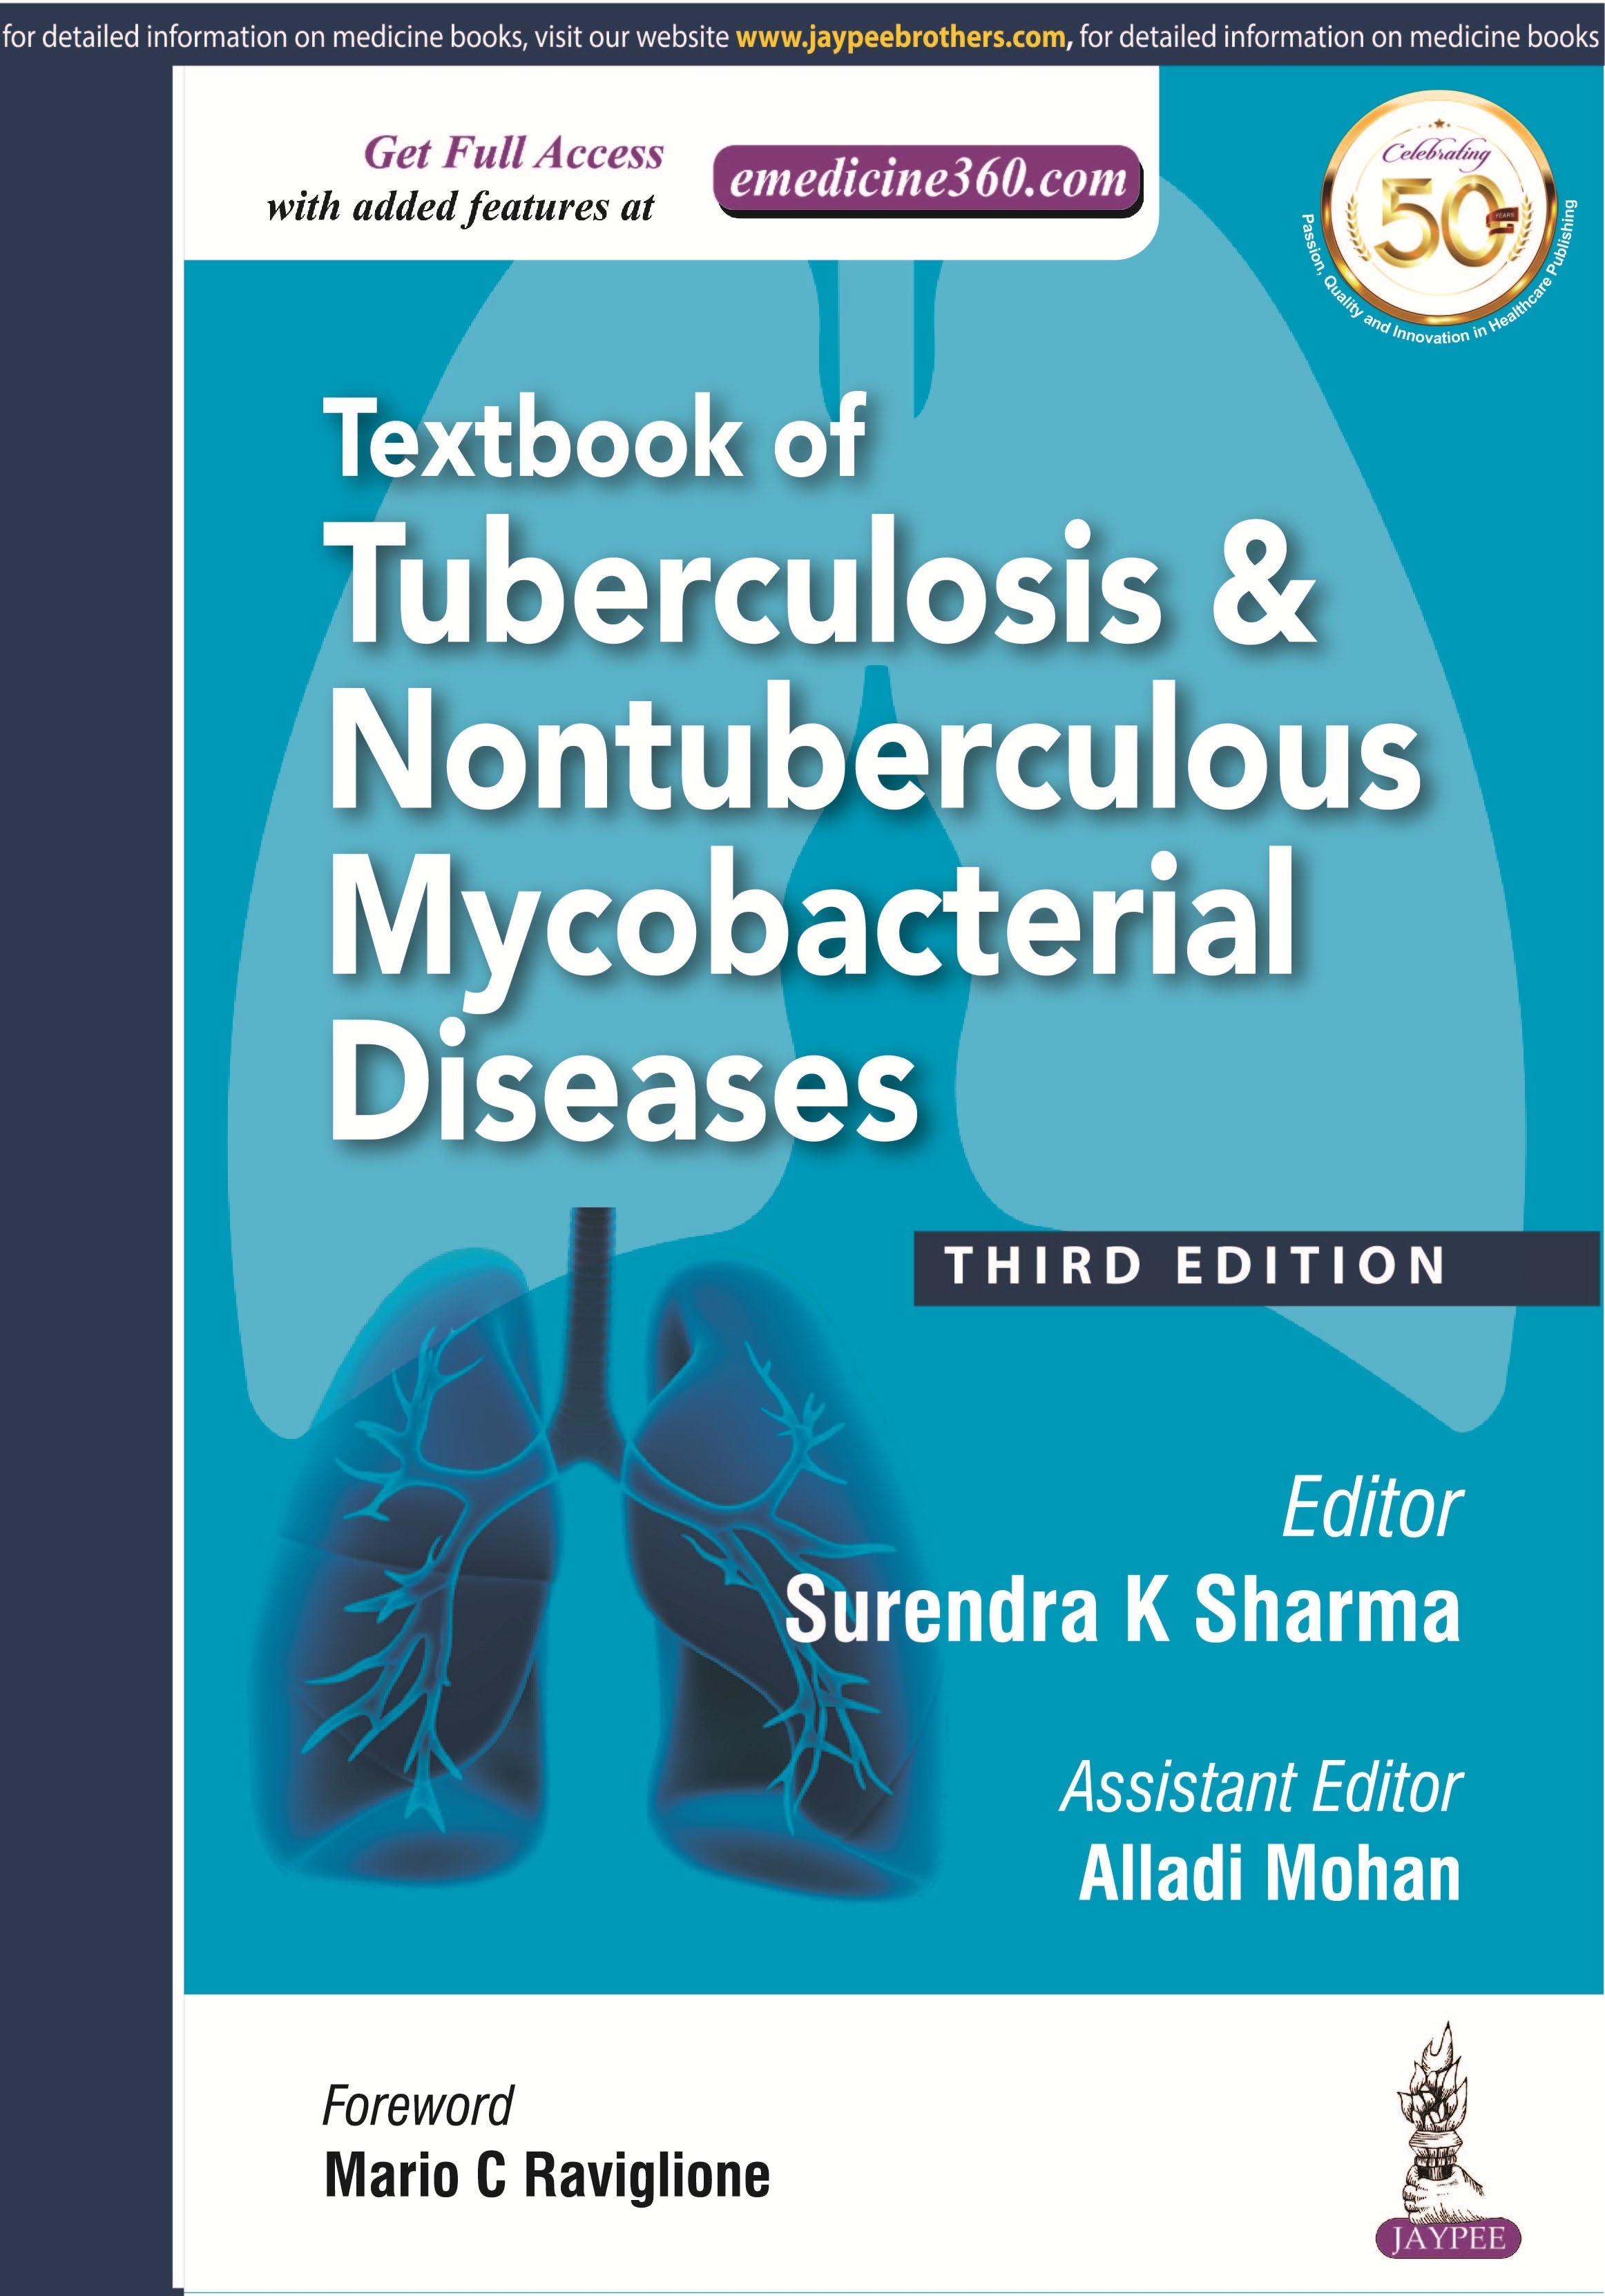 TEXTBOOK OF TUBERCULOSIS & NONTUBERCULOUS MYCOBACTERIAL DISEASES
,3/E,SURENDRA K SHARMA